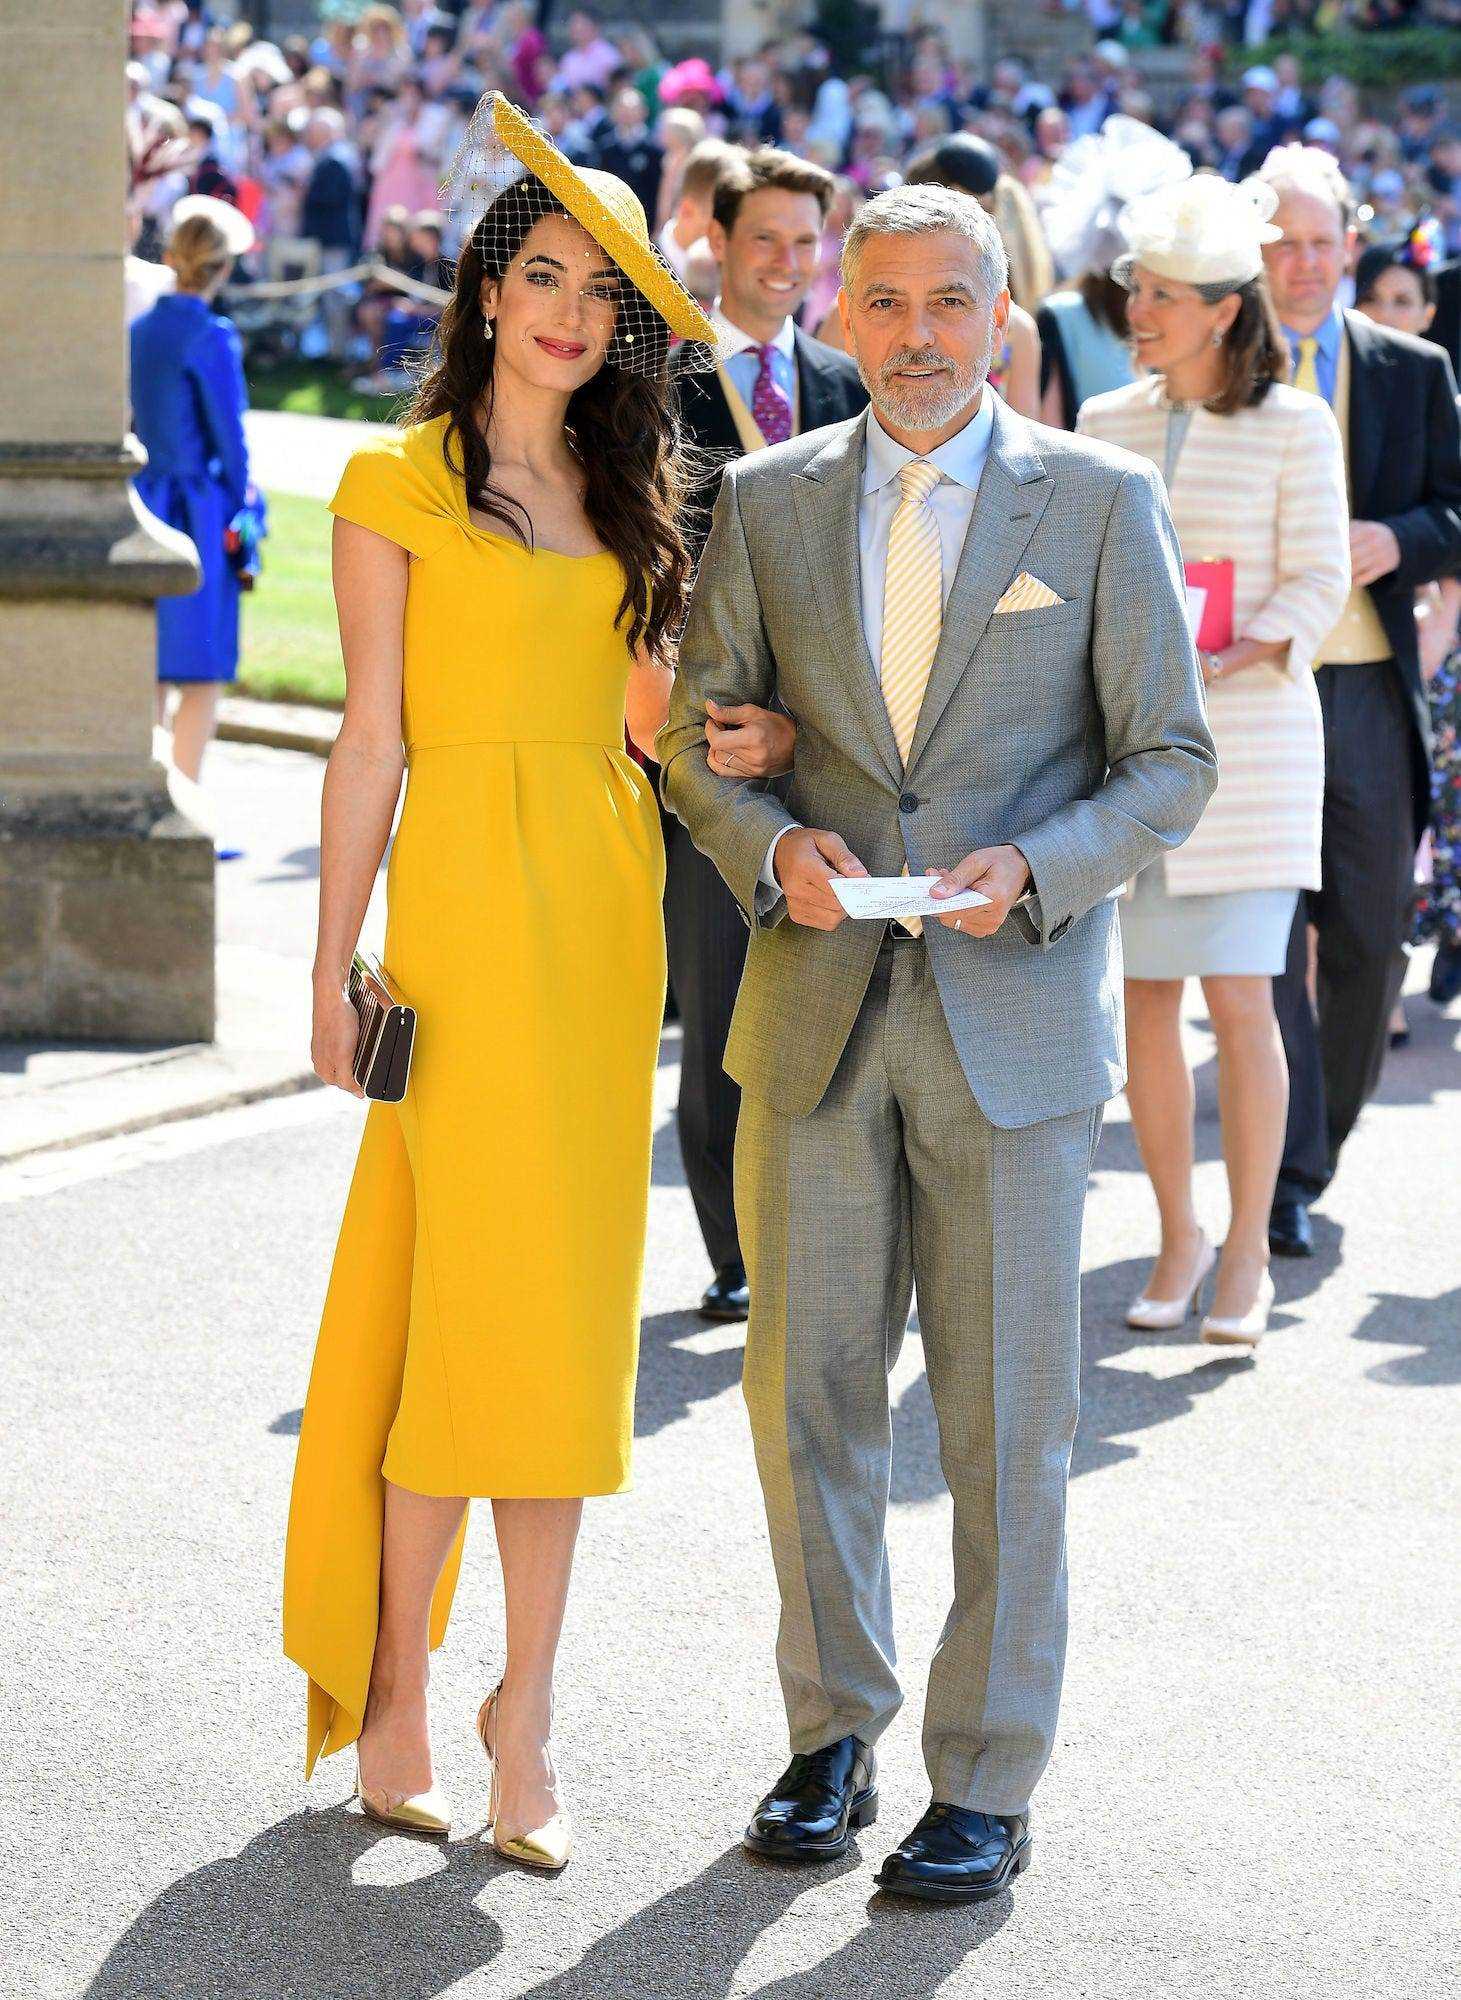 The Clooney's bei der Hochzeit von Meghan Markle und Prinz Harry am 19. Mai 2018.